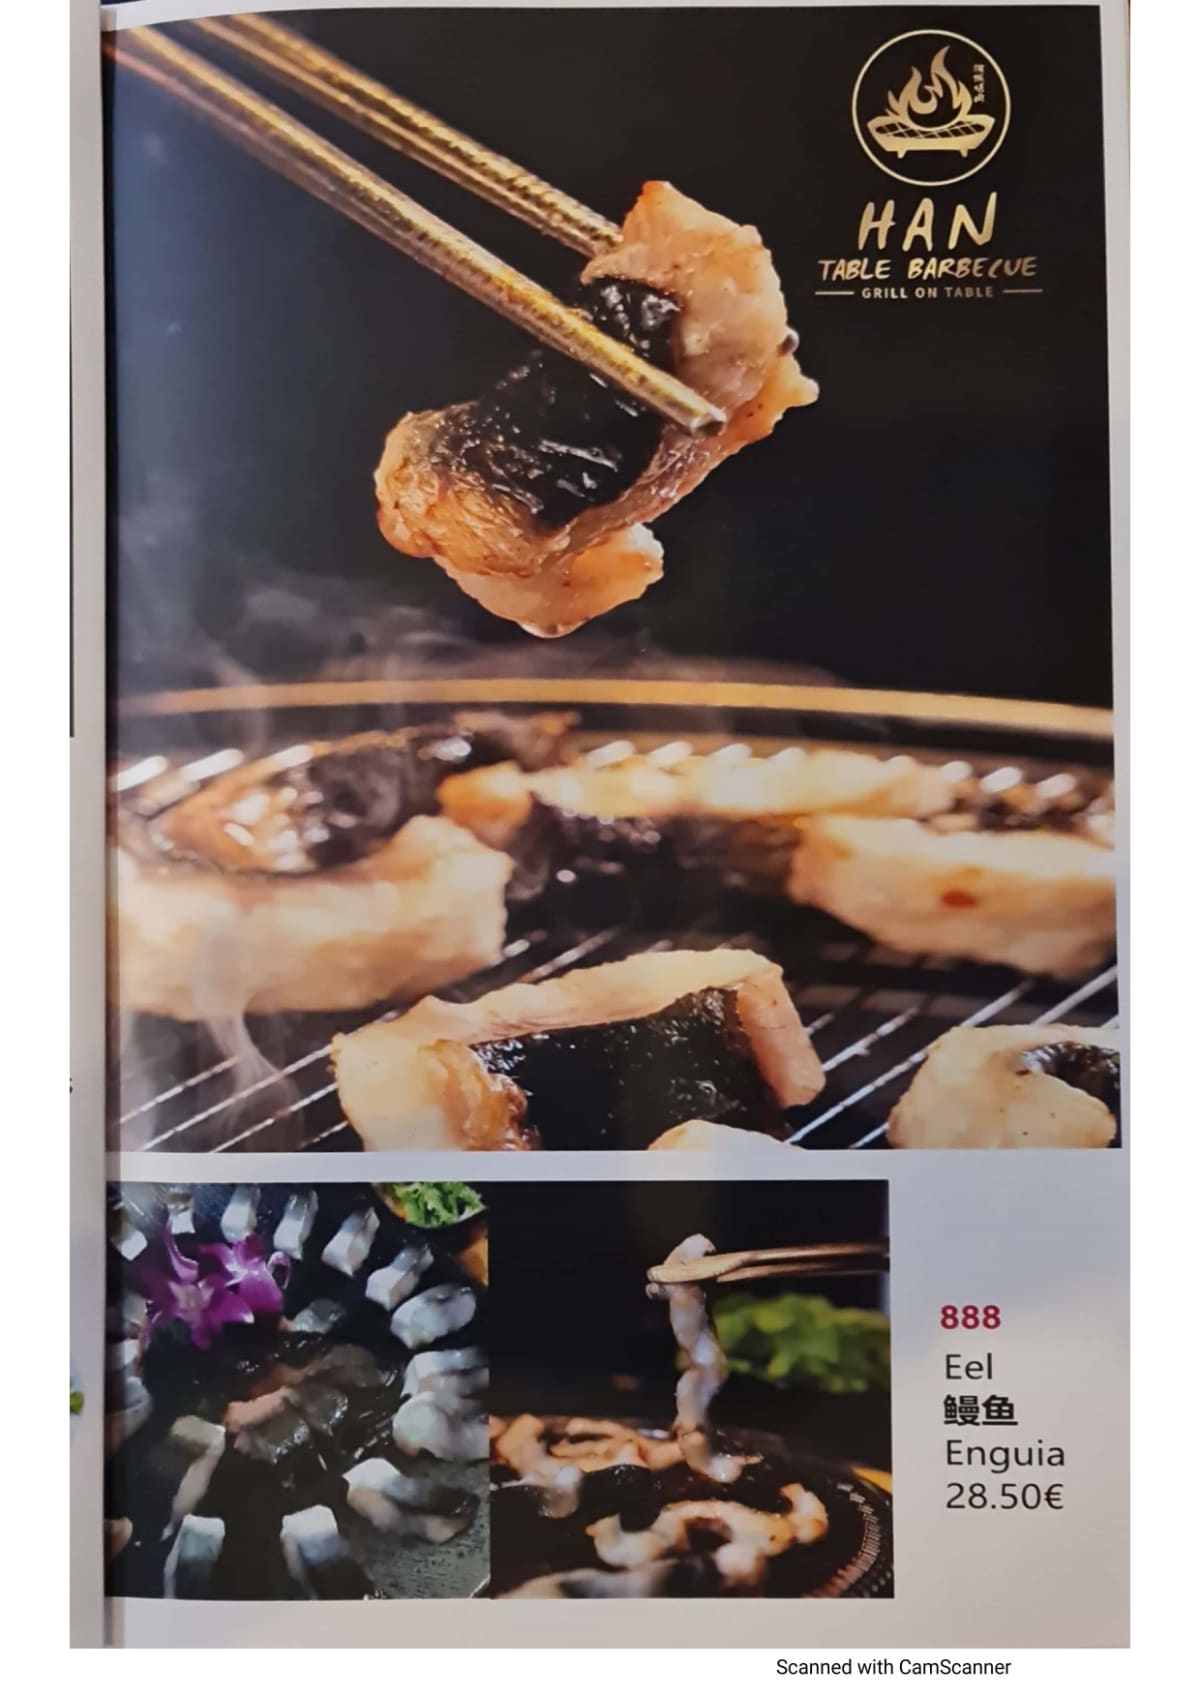 Han Table Barbecue - Arroios menu